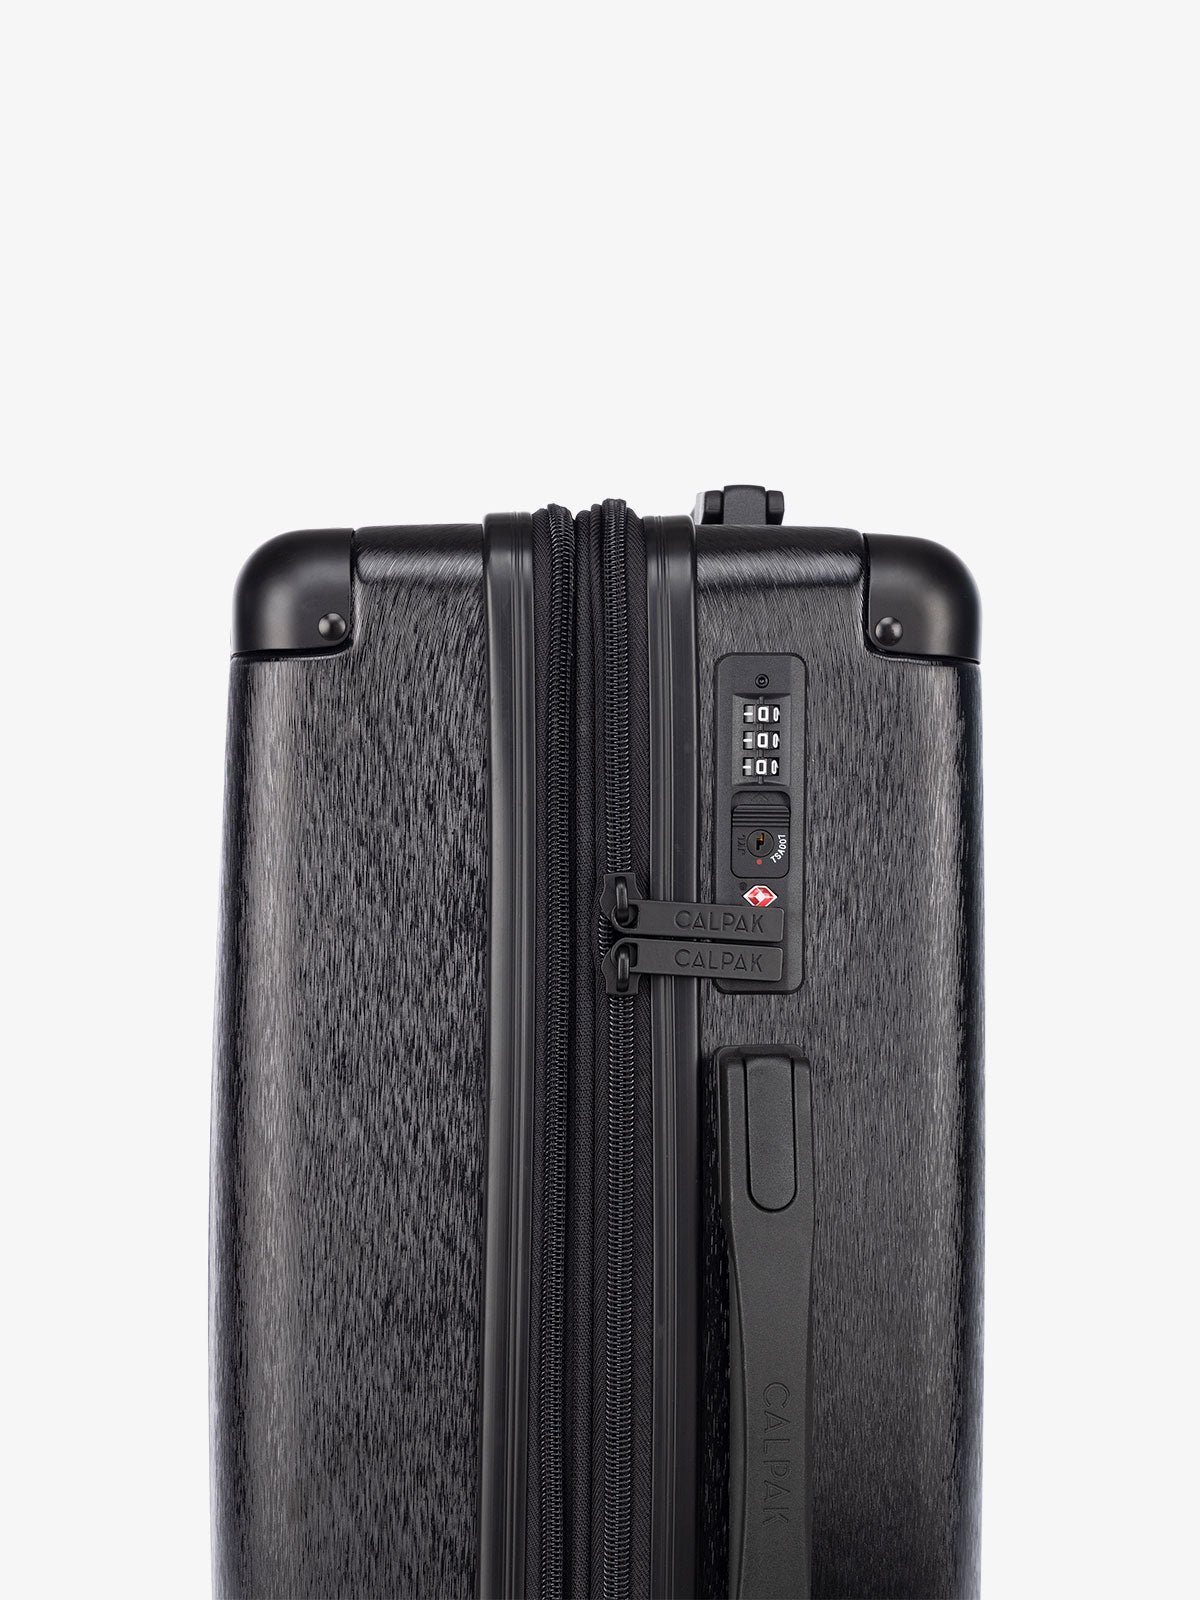 TSA lock of black CALPAK Ambeur hardside carry on suitcase